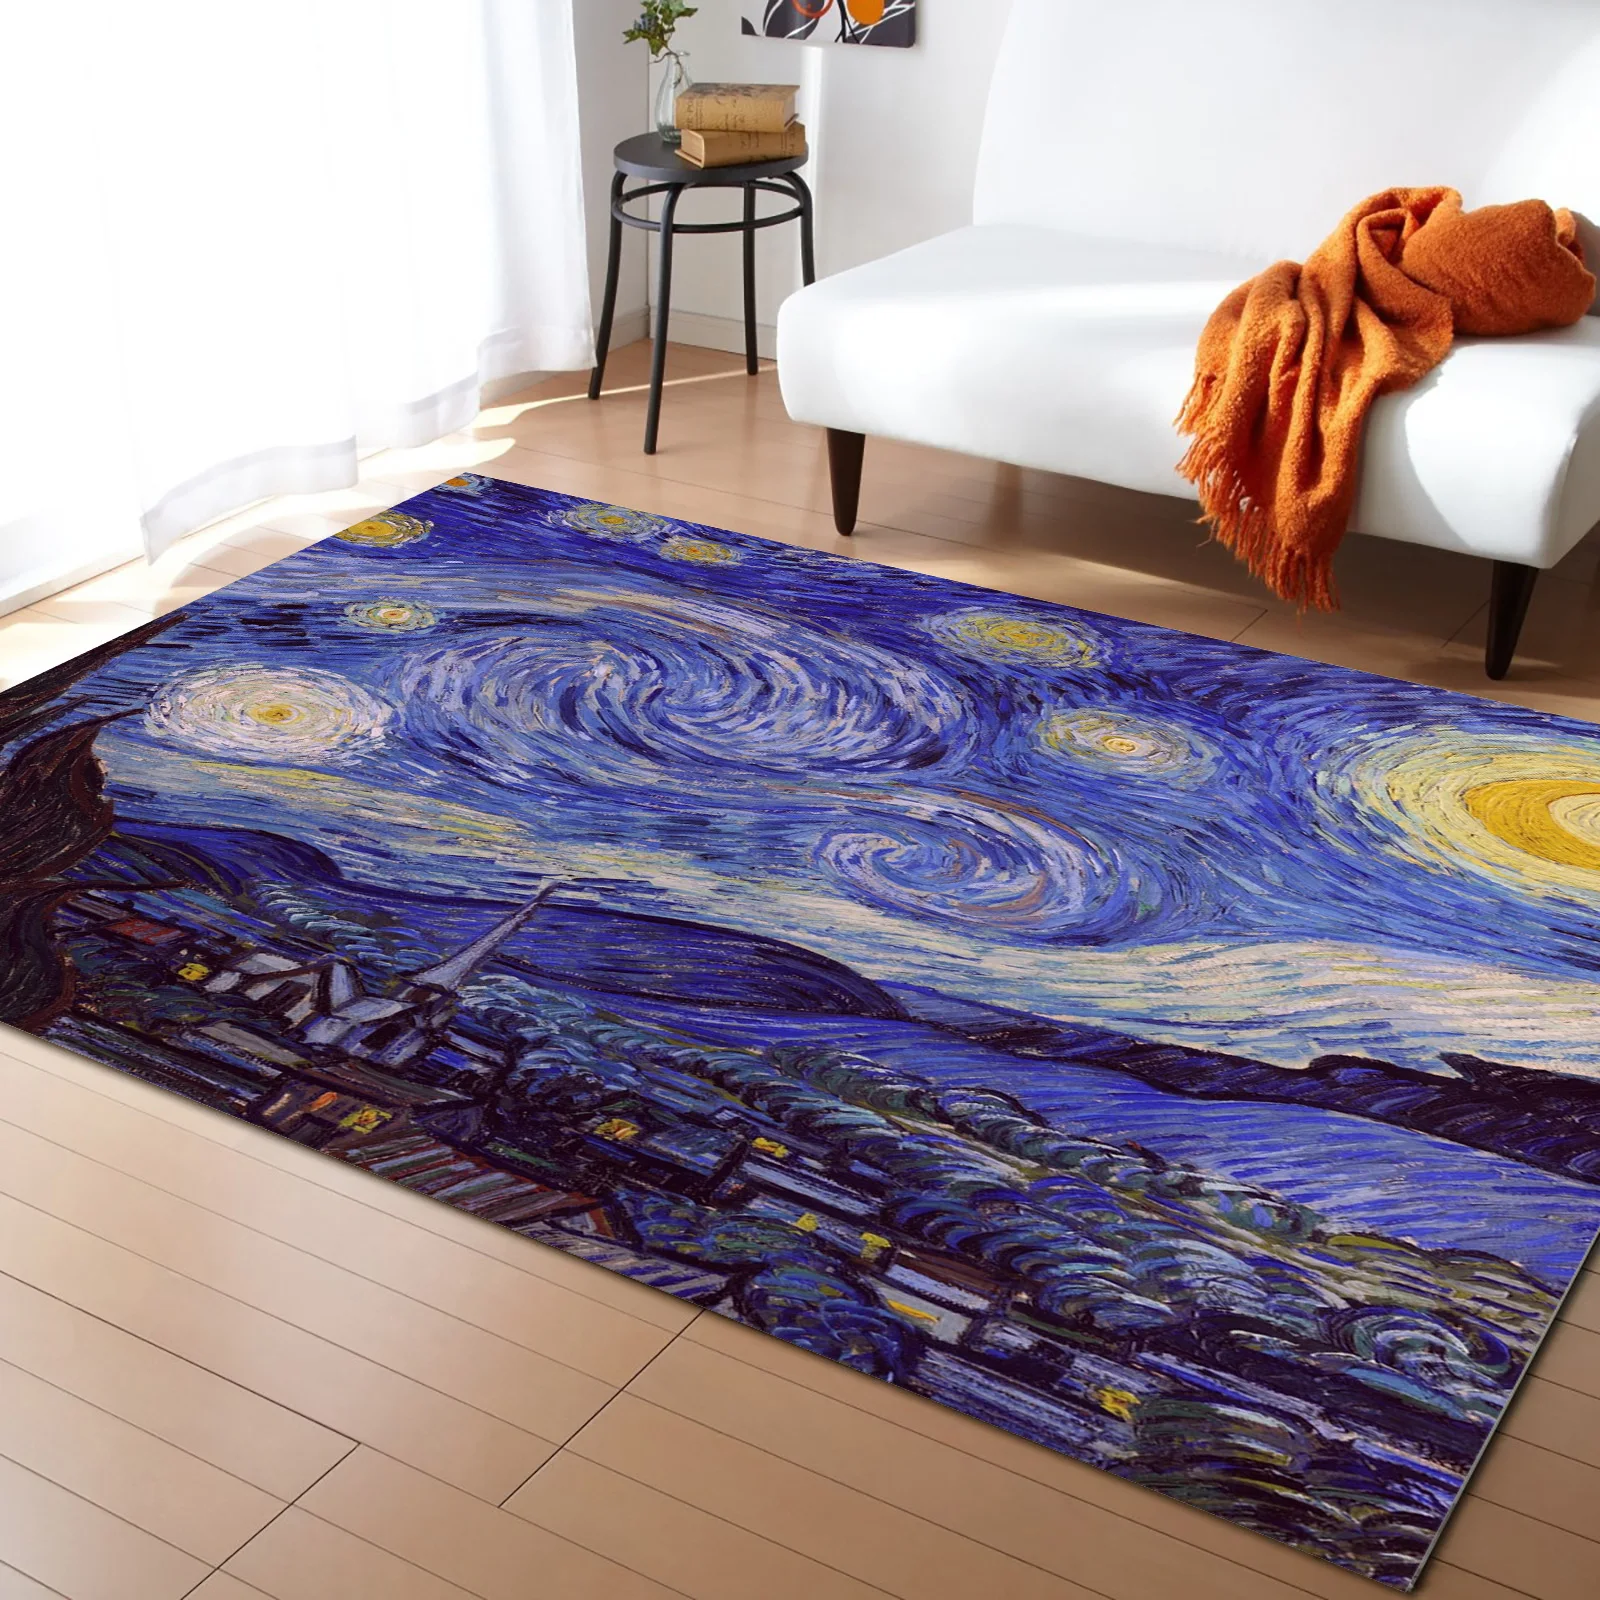 https://ae01.alicdn.com/kf/Safec3f7f156544578079b474da54c8f6Q/Vincent-Van-Gogh-Starry-Night-Carpet-for-Home-Living-Room-Bedroom-Bedside-Decor-Large-Area-Rug.jpg